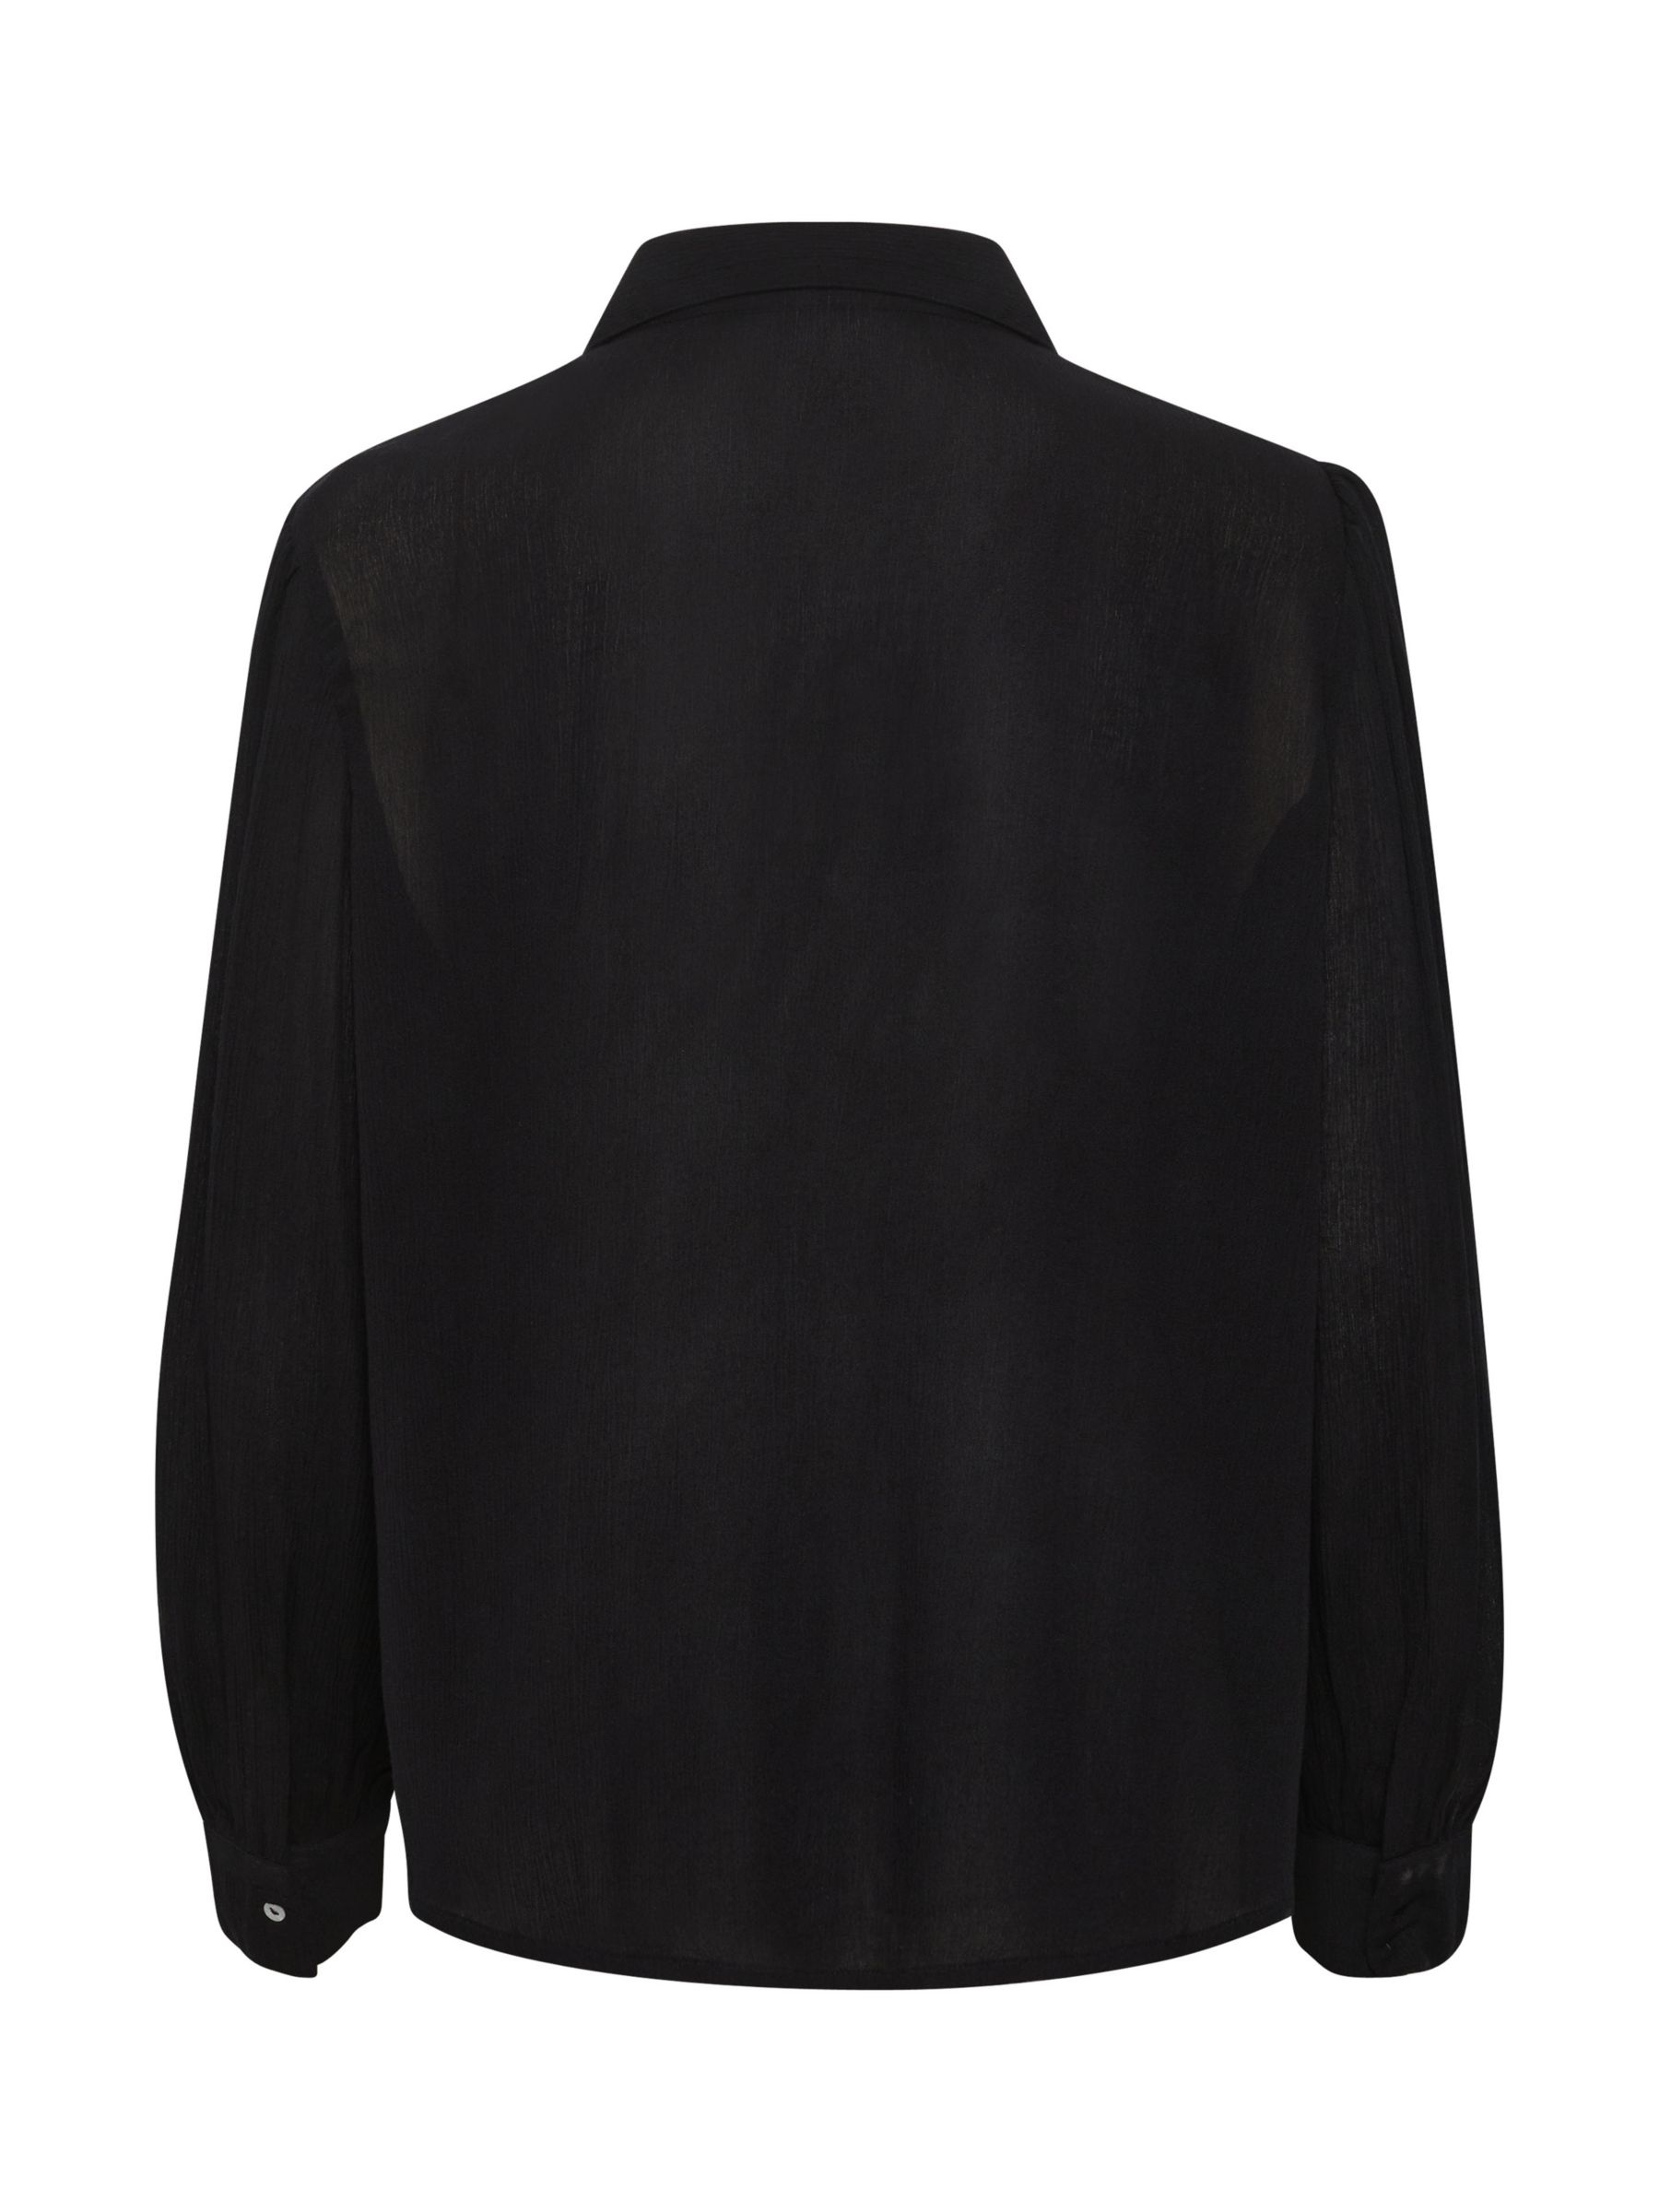 Saint Tropez Alba Casual Fit Button Shirt, Black at John Lewis & Partners